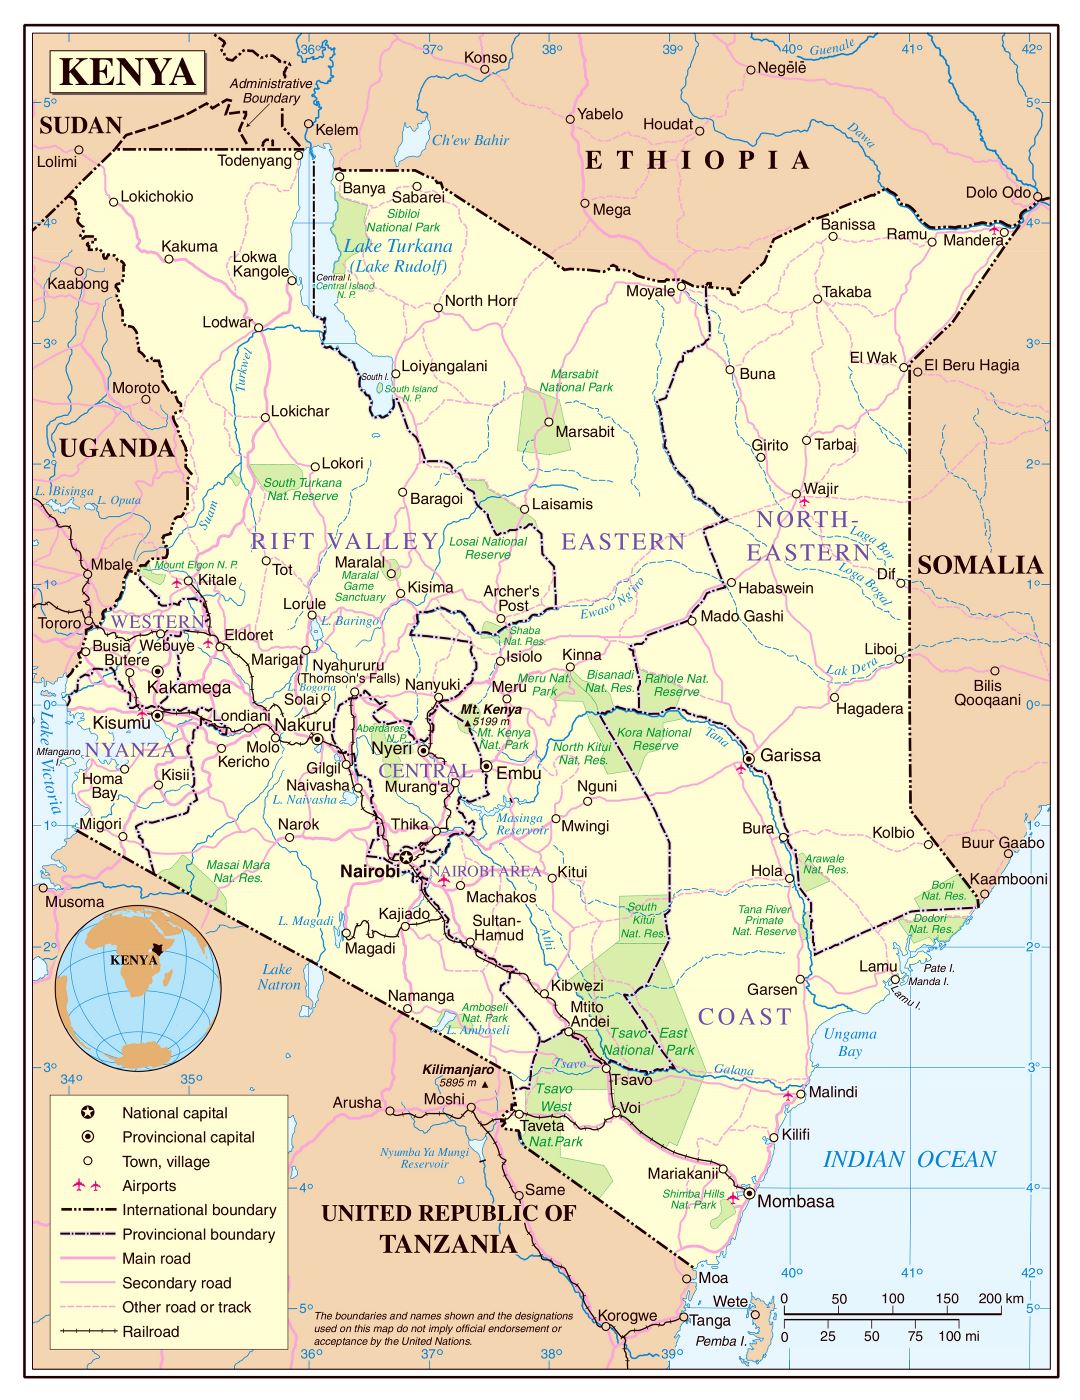 Большая детальная политическая и административная карта Кении с дорогами, железными дорогами, национальными парками, городами и аэропортами